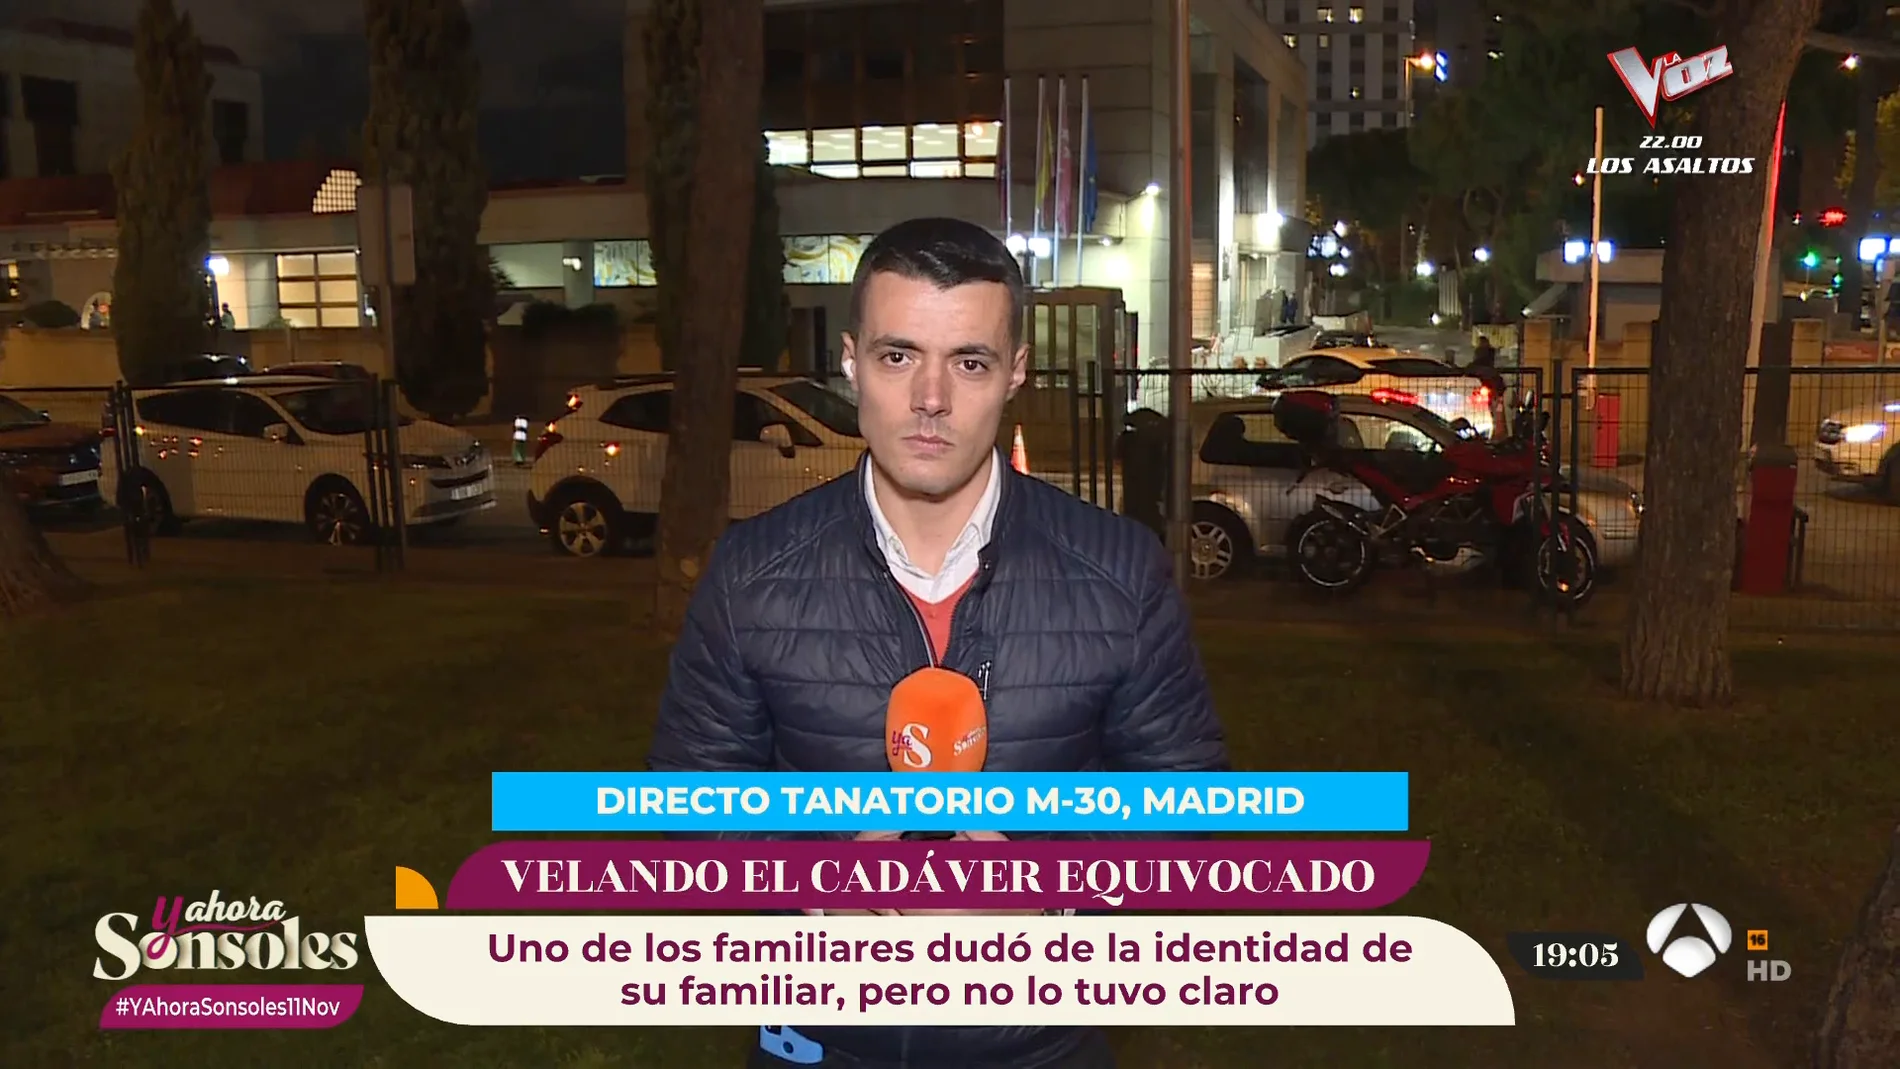 Las familias afectadas por la confusión de cadáveres en Madrid: 